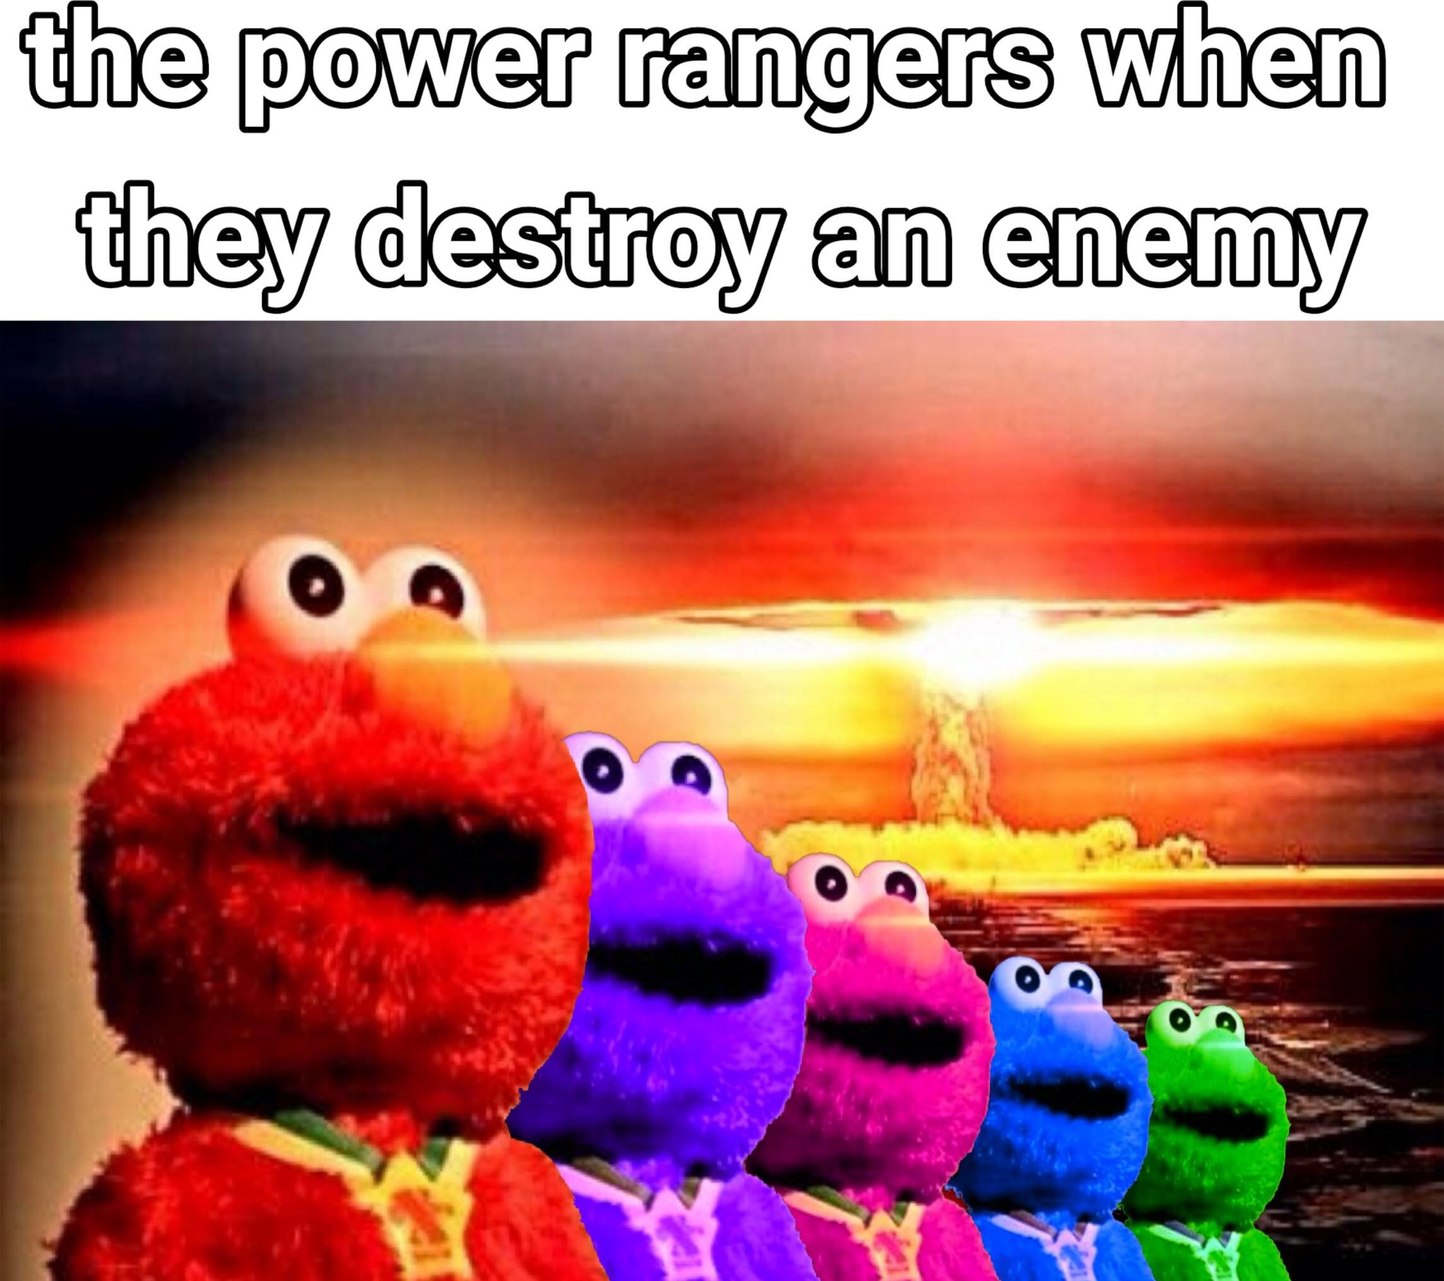 Elmo rangers - meme